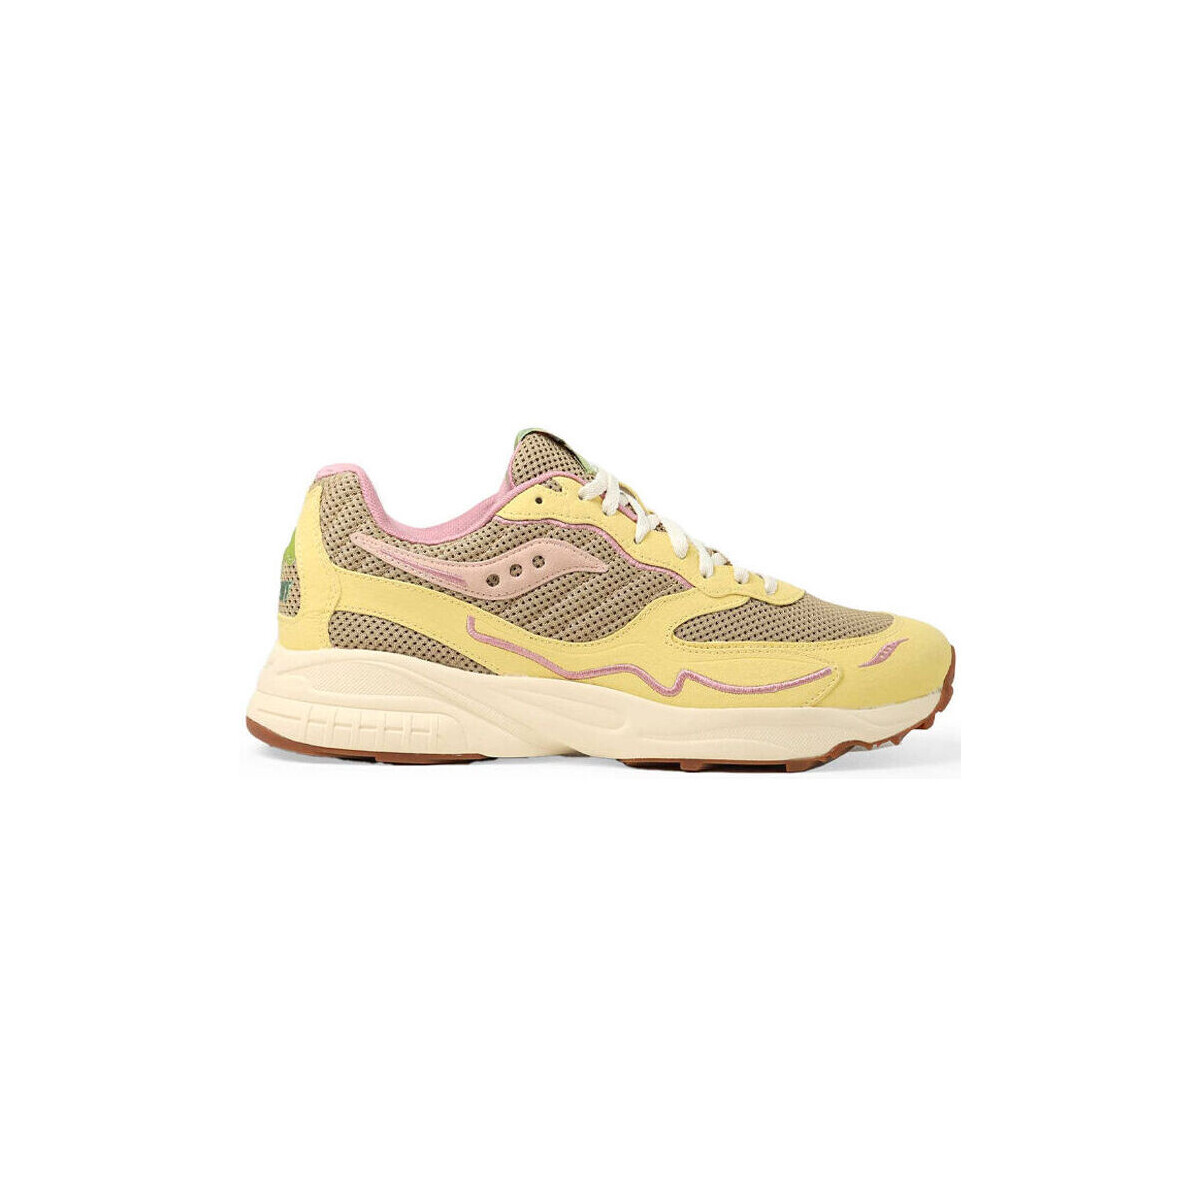 Παπούτσια Sneakers Saucony 3D Grid Hurricane S70747-1 Tan/Light Yellow Yellow